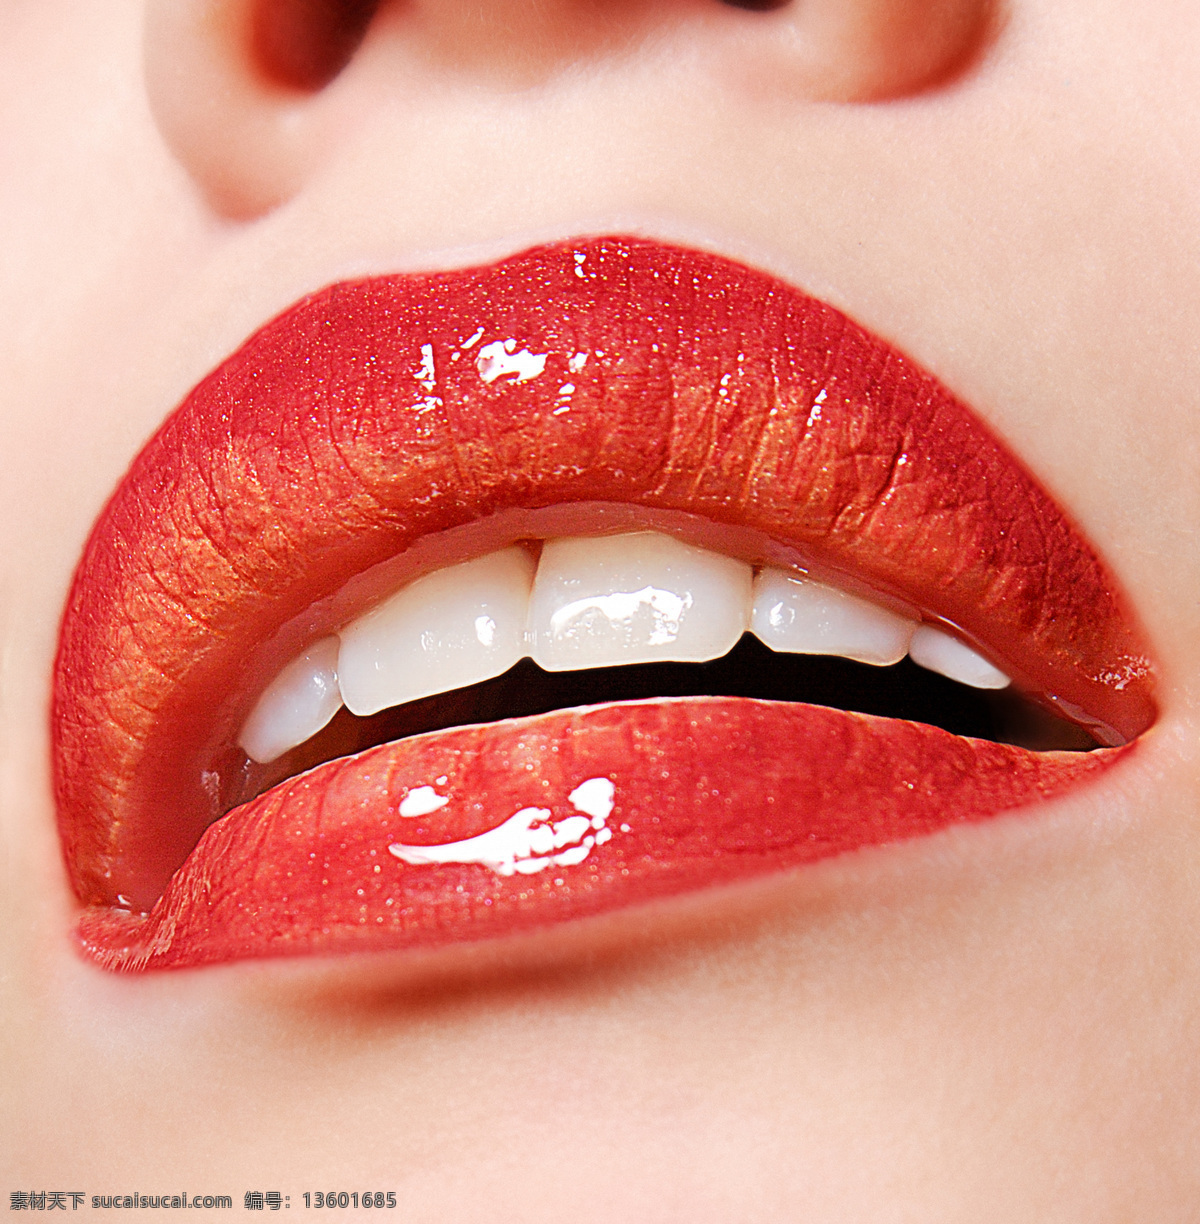 女性 性感 唇 女性性感的唇 嘴巴 特写 实用图片 精美图片 印刷适用 高清图片 创意图片 人物图库 人物摄影